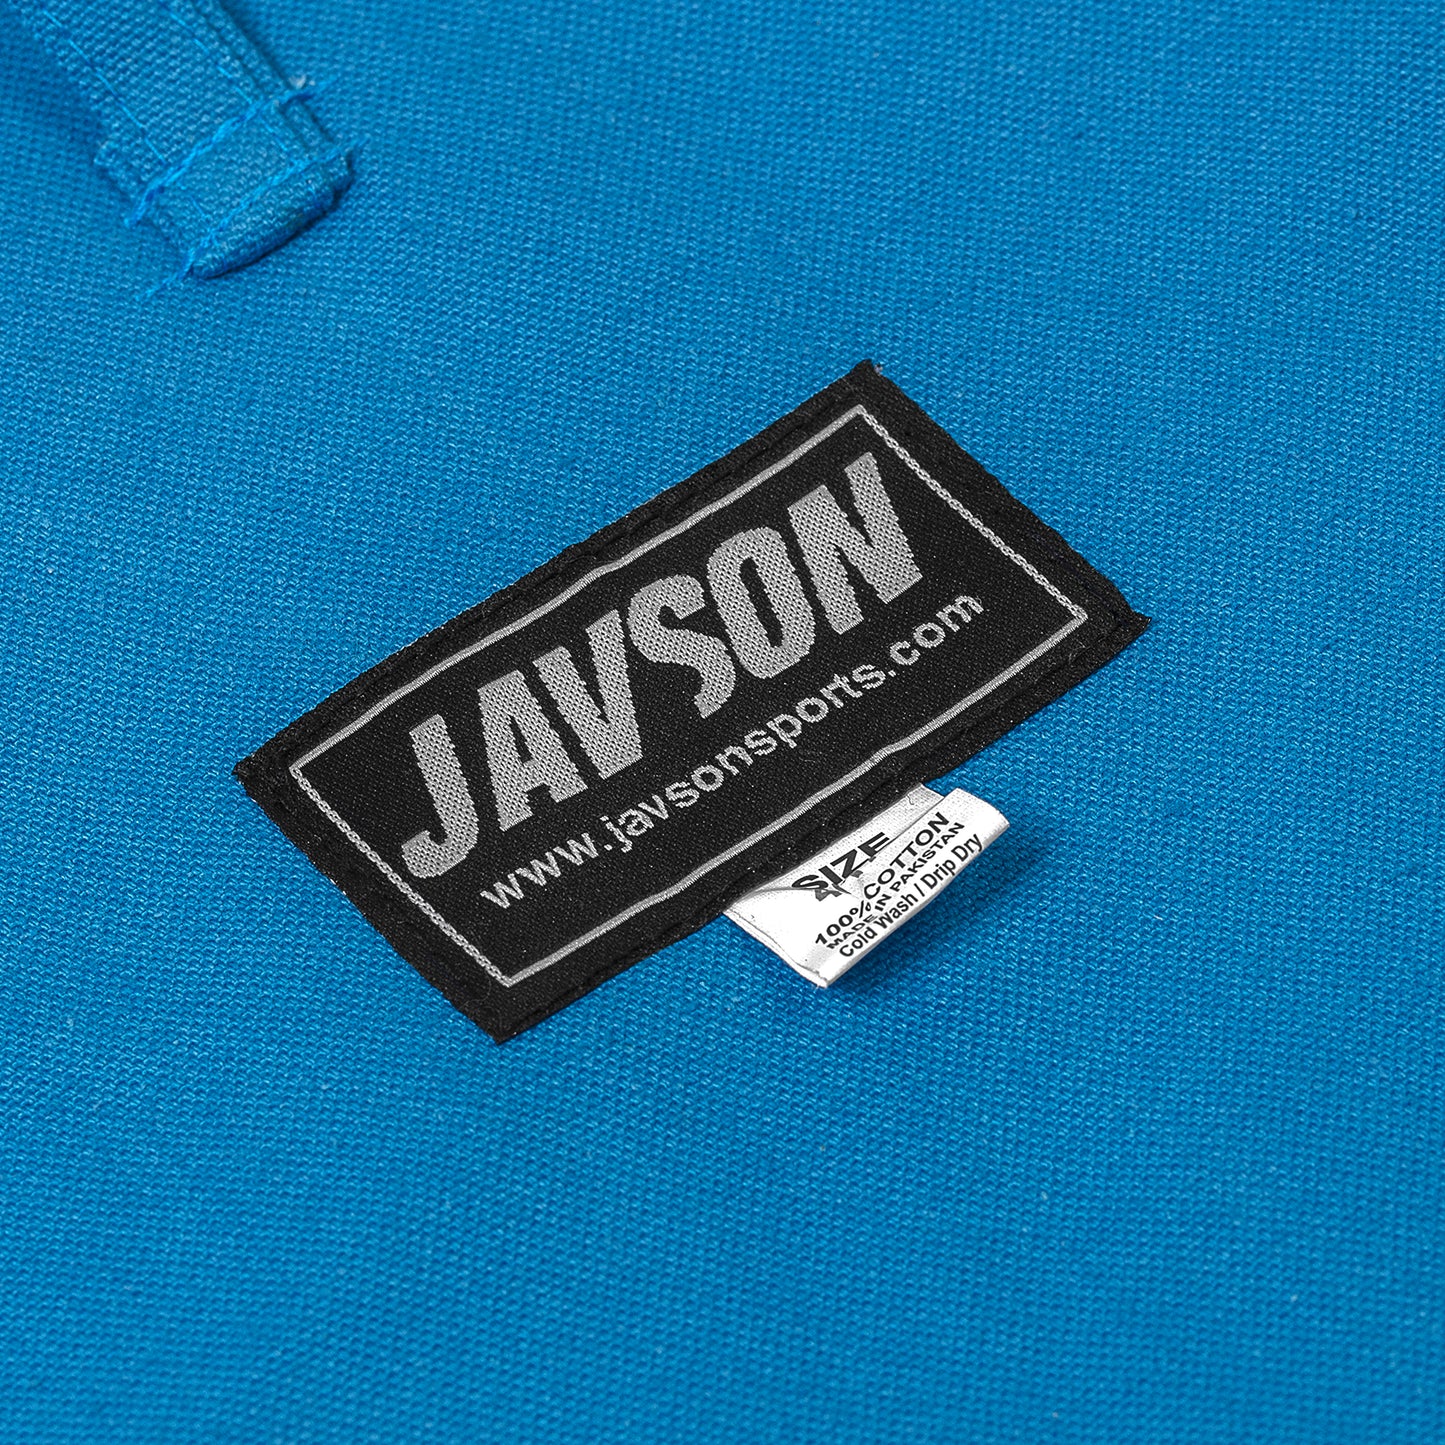 JBI UNIFORM 14 OZ 100% COTTON SPECIAL BLUE COLOUR BY JAVSON